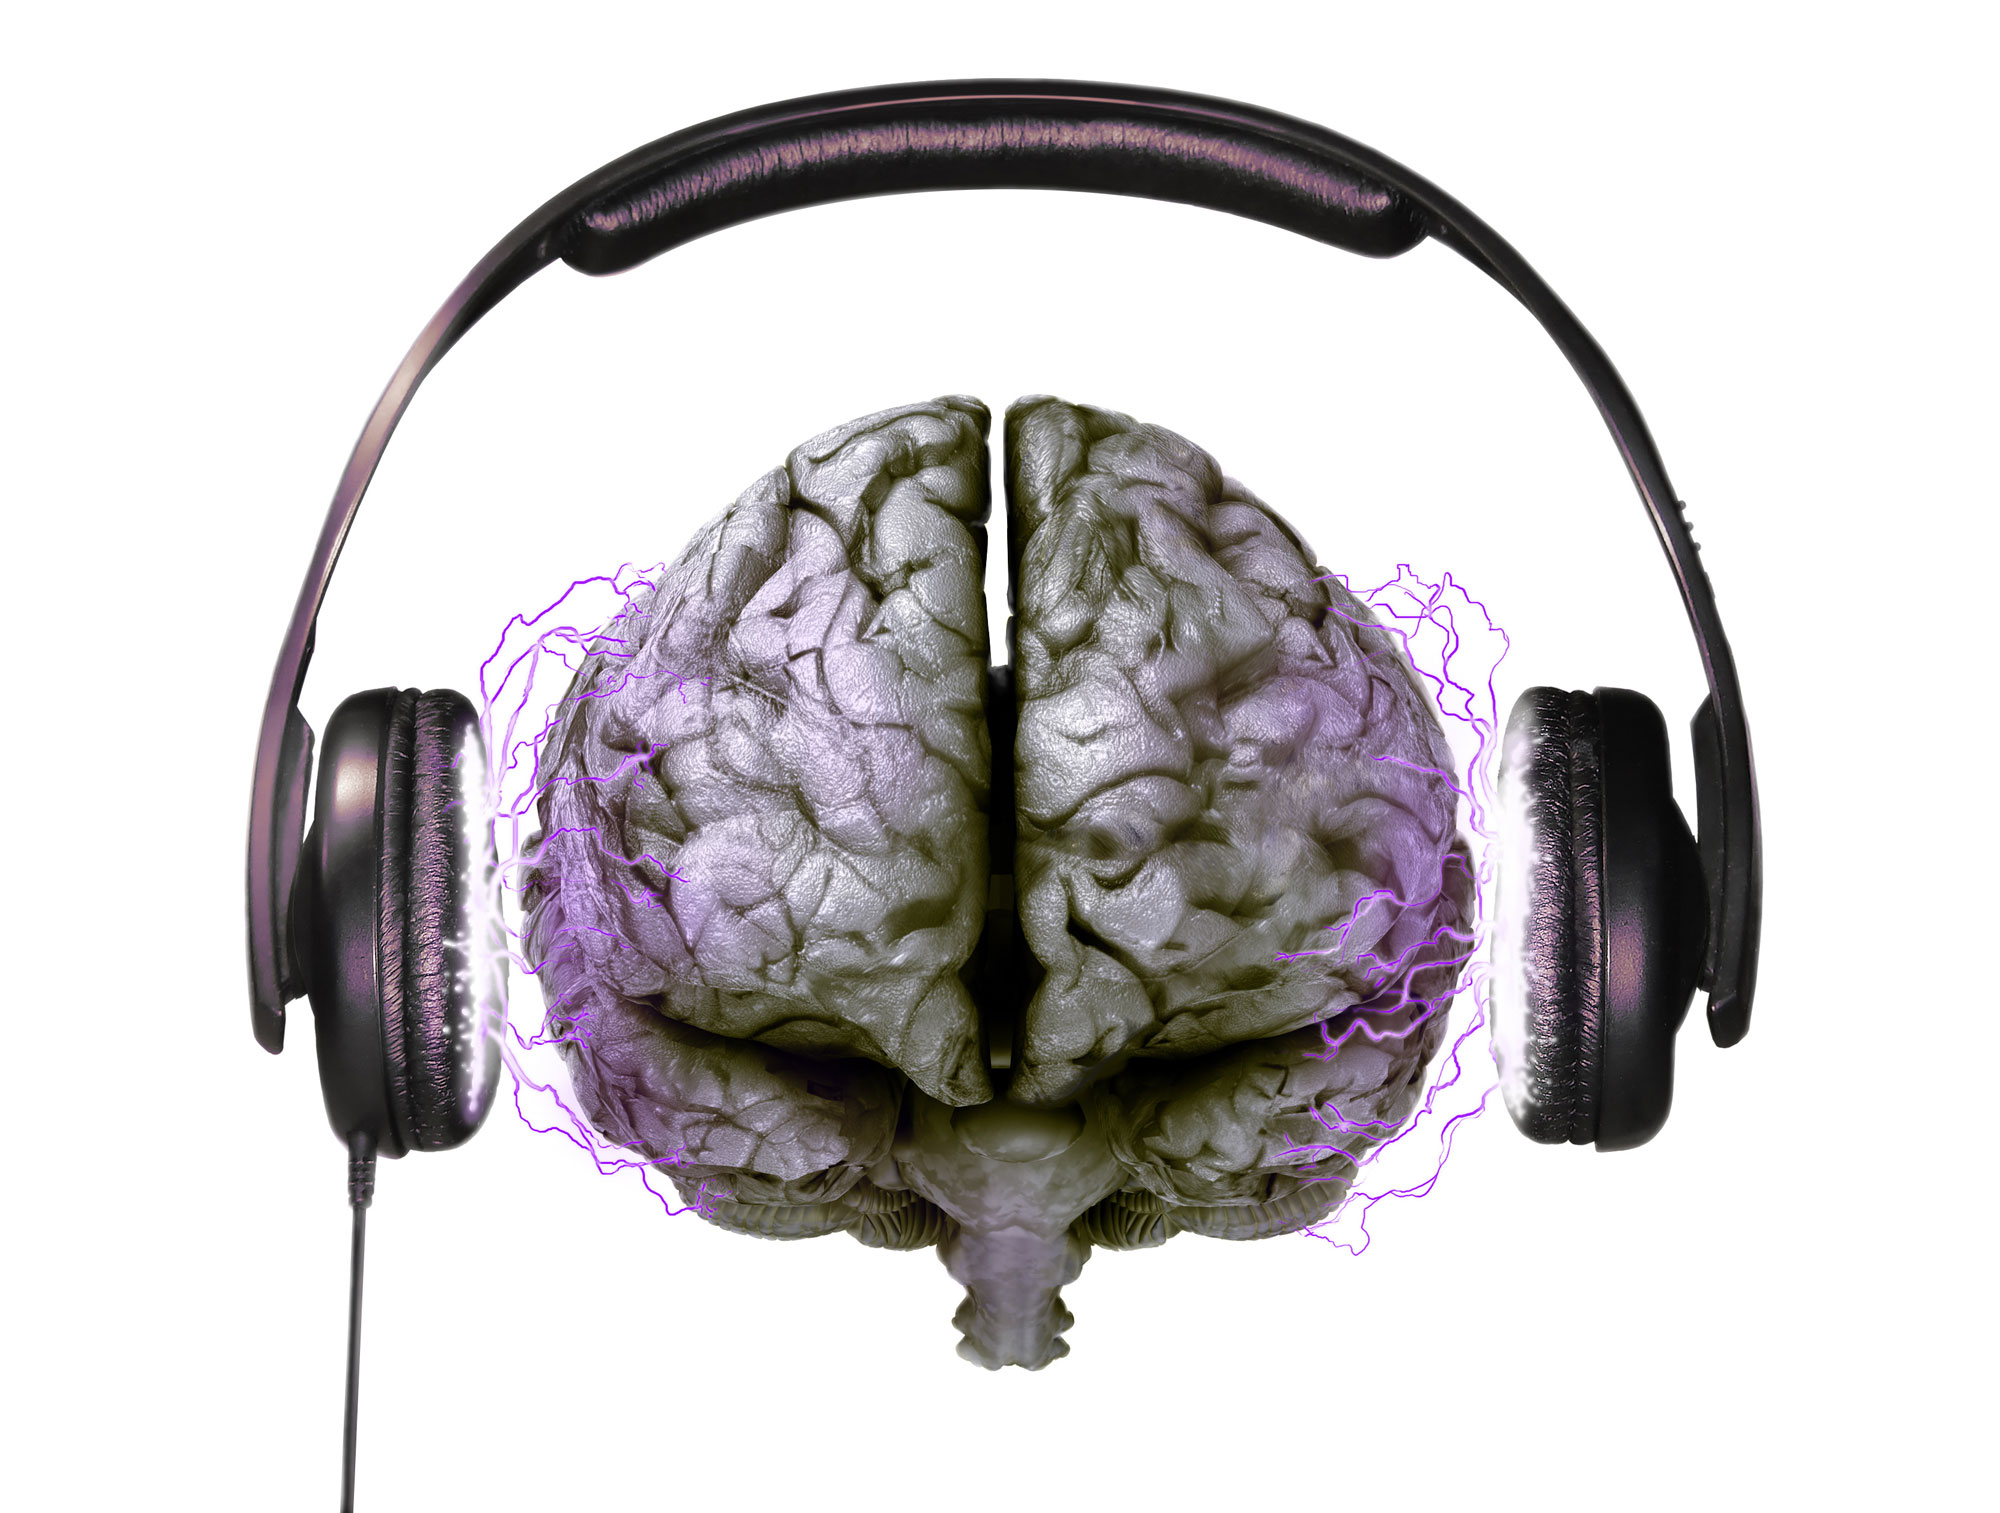 Les relations entre cerveau et musique forment un sujet complexe.